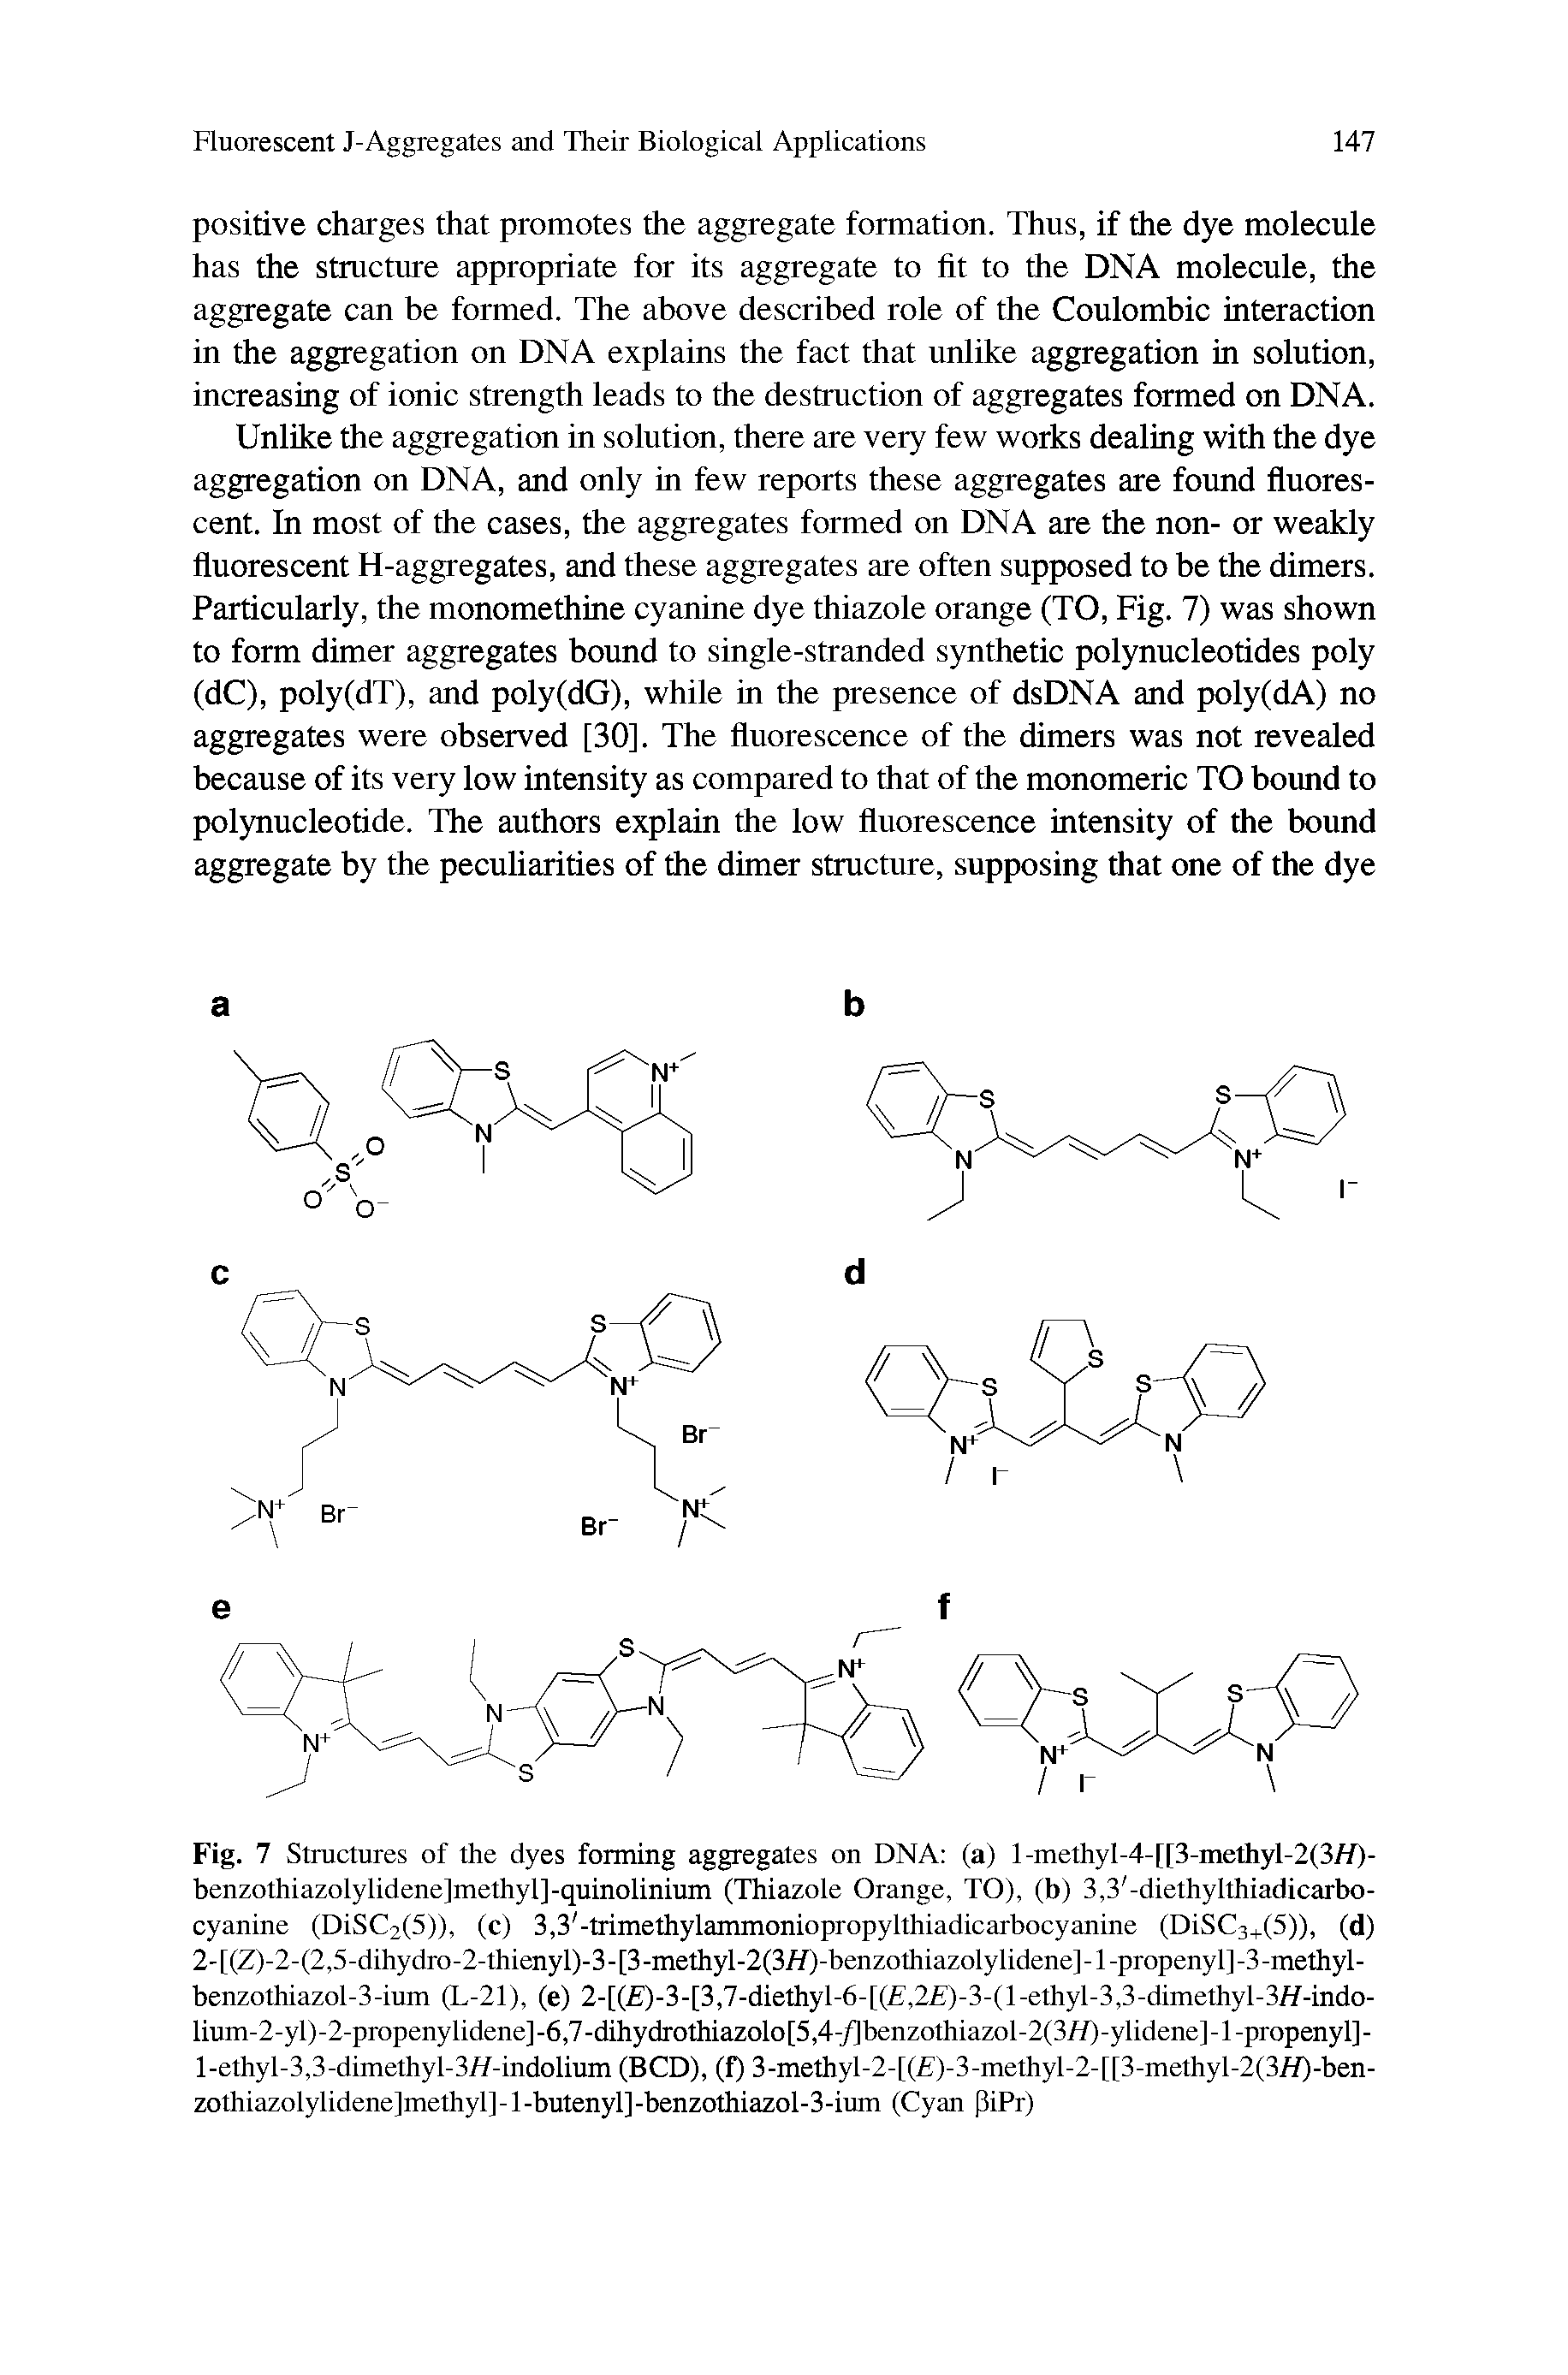 Fig. 7 Structures of the dyes forming aggregates on DNA (a) l-methyI-4-[[3-methyl-2(3//)-benzothiazolylidene]methyl]-quinolinium (Thiazole Orange, TO), (b) 3,3 -diethyIthiadicarbo-cyanine (DiSC2(5)), (c) 3,3 -trimethylammoniopropylthiadicarbocyanine (DiSC3+(5)), (d) 2- [(Z)-2-(2,5-dihydro-2-thienyl)-3 - [3 -methyl-2(3/f)-benzothiazolylidene] -1 -propenyl] -3 -methyl -benzothiazol-3-ium (L-21), (e) 2-[( )-3-[3,7-diethyT6-[( ,2 )-3-(l-ethyl-3,3-dimethyl-3/7-indo-lium-2-yl)-2-propenylidene]-6,7-dihydrothiazolo[5,4-/]benzothiazol-2(3//)-ylidene]-l-propenyl]-l-ethyl-3,3-dimethyl-3//-indolium (BCD), (f) 3-methyl-2-[( )-3-methyl-2-[[3-methyl-2(3/f)-ben-zothiazolylidene]methyl]-l-butenyl]-benzothiazol-3-ium (Cyan ]3iPr)...